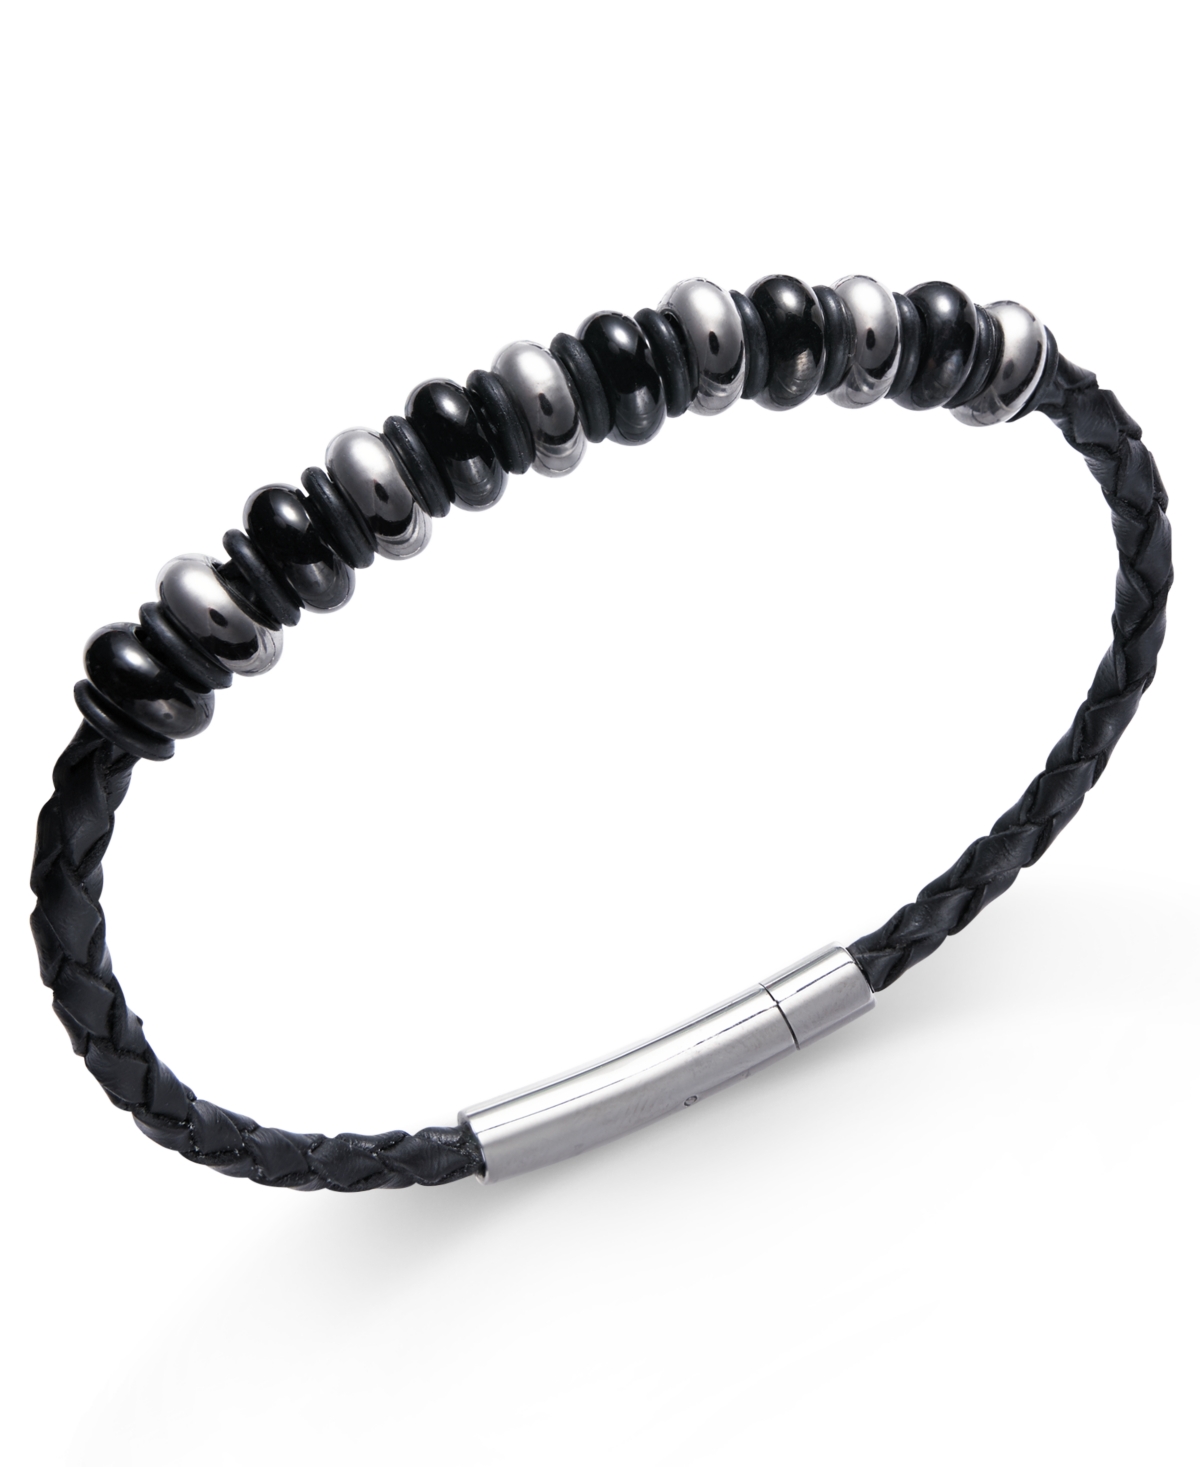 Men's Stainless Steel Multi-Bead Leather Bracelet - Black